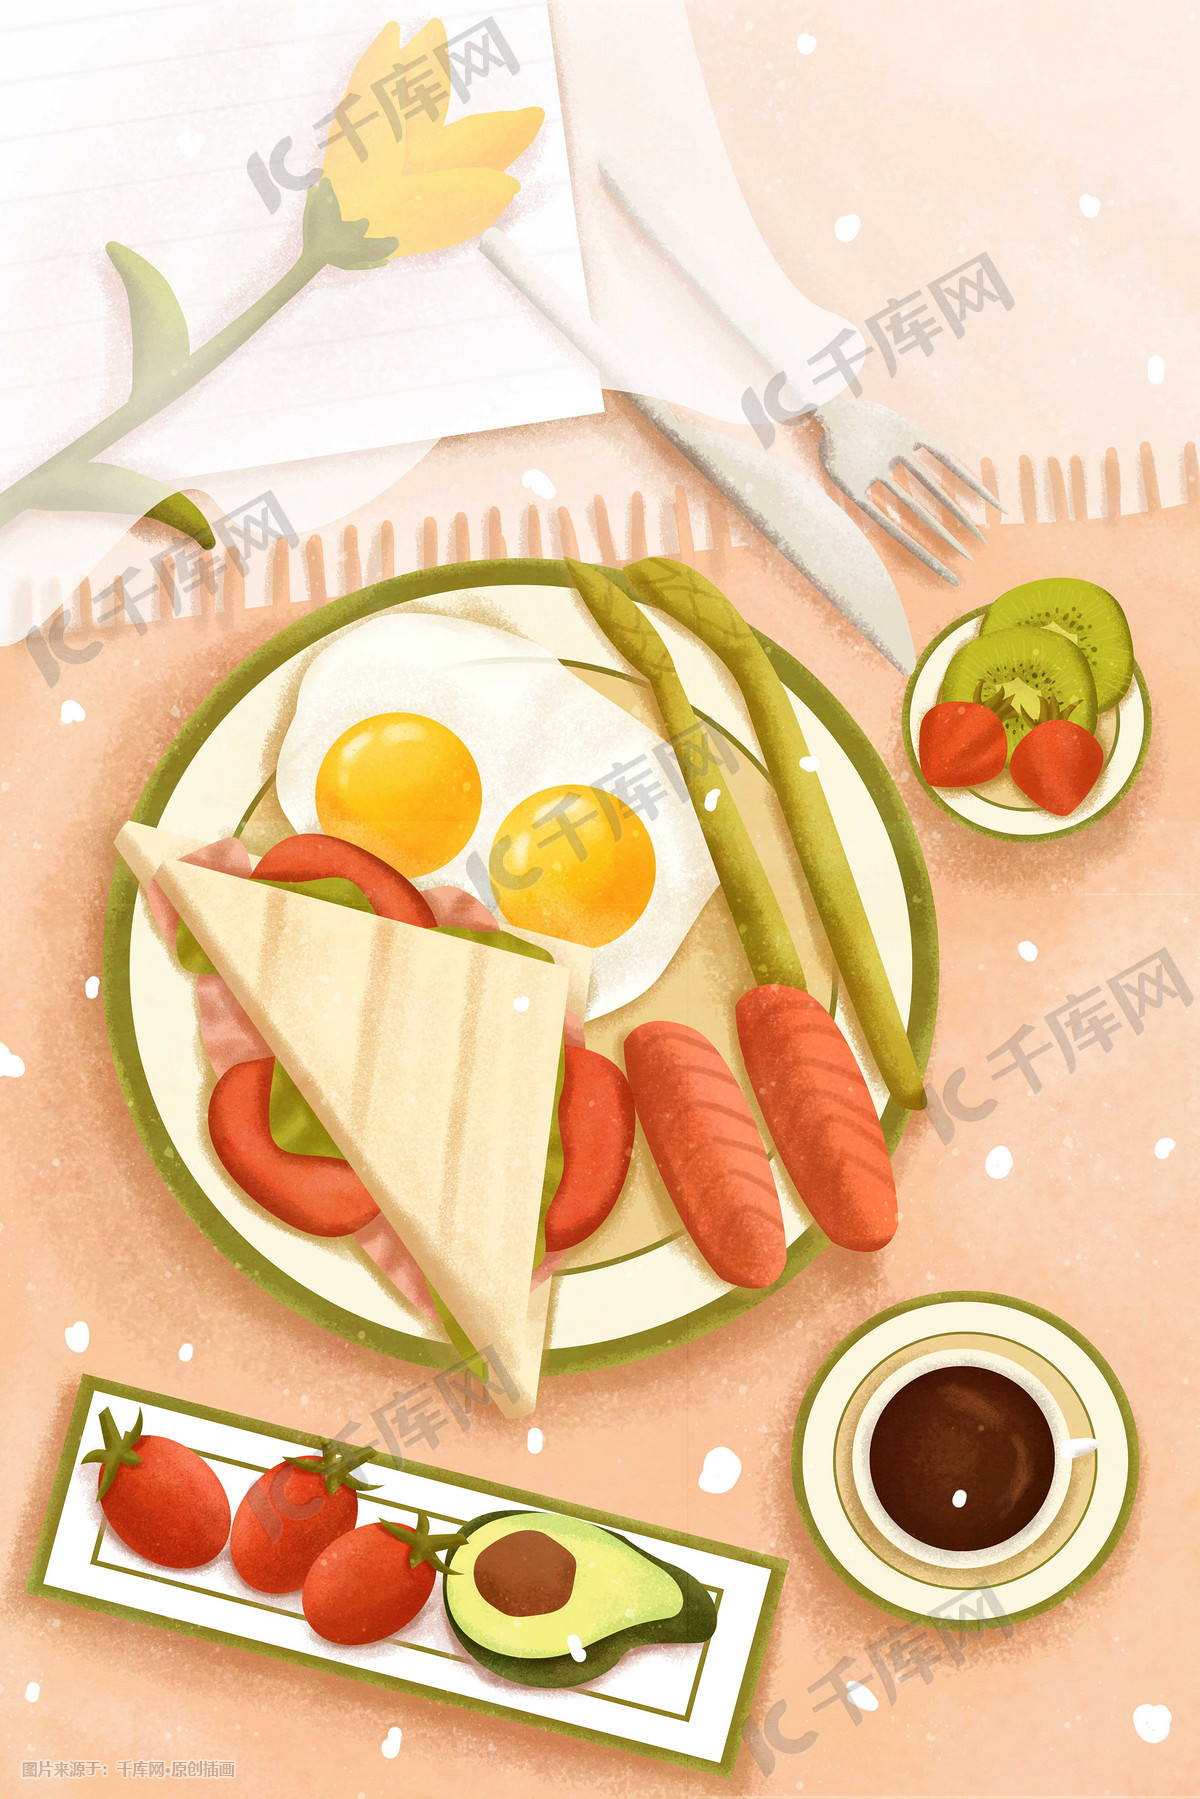 墨西哥西餐食物勾线图案平面插画元素A - 模板 - Canva可画